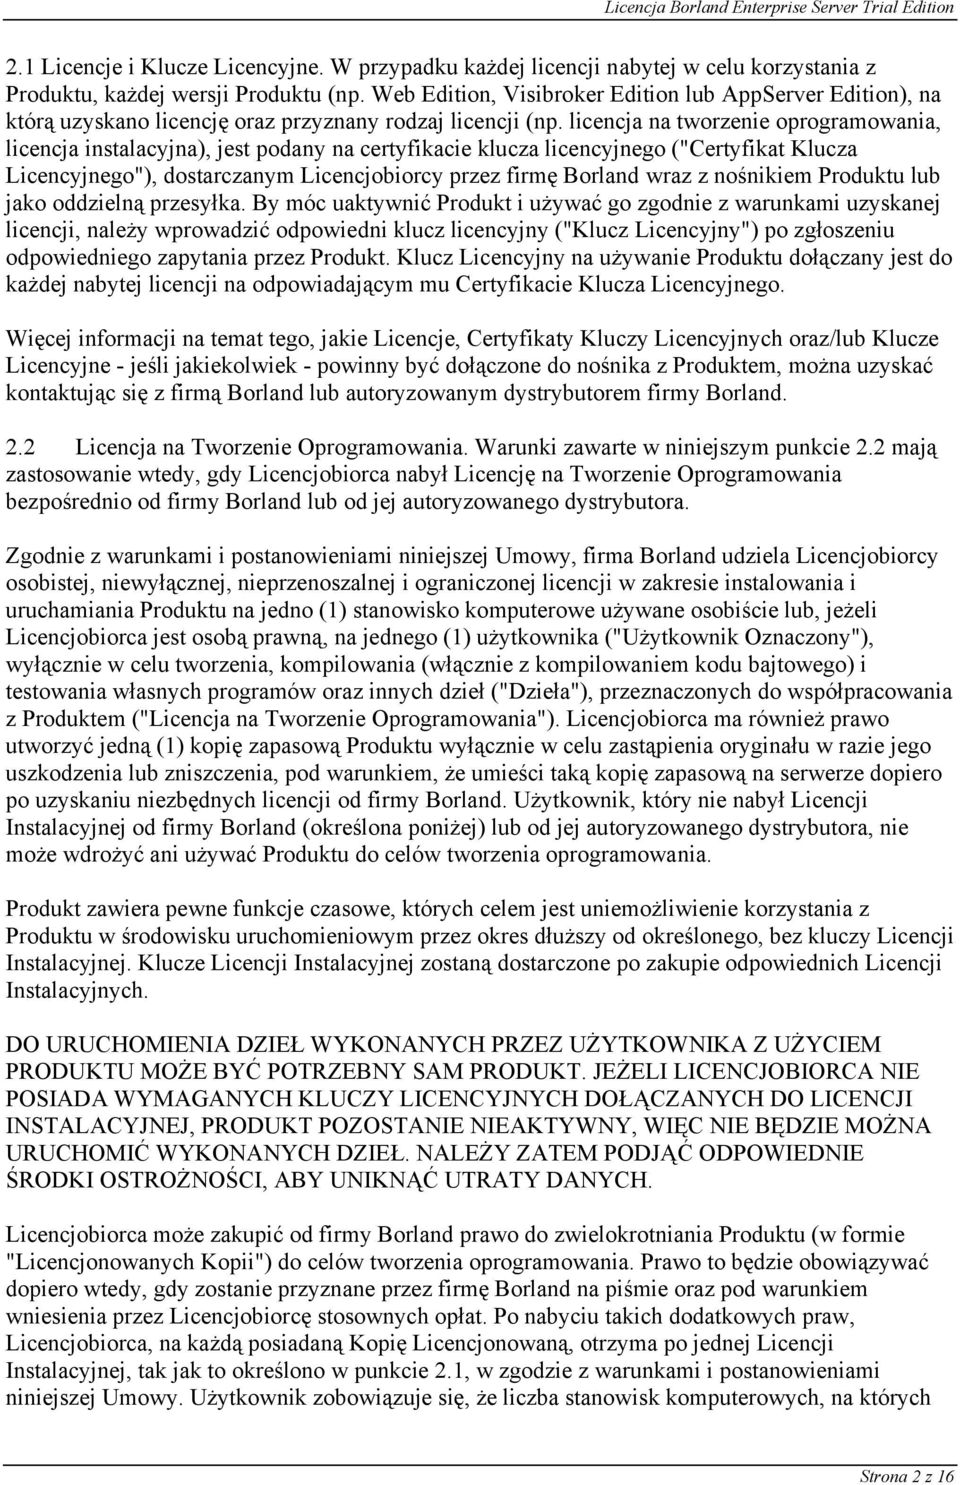 licencja na tworzenie oprogramowania, licencja instalacyjna), jest podany na certyfikacie klucza licencyjnego ("Certyfikat Klucza Licencyjnego"), dostarczanym Licencjobiorcy przez firmę Borland wraz